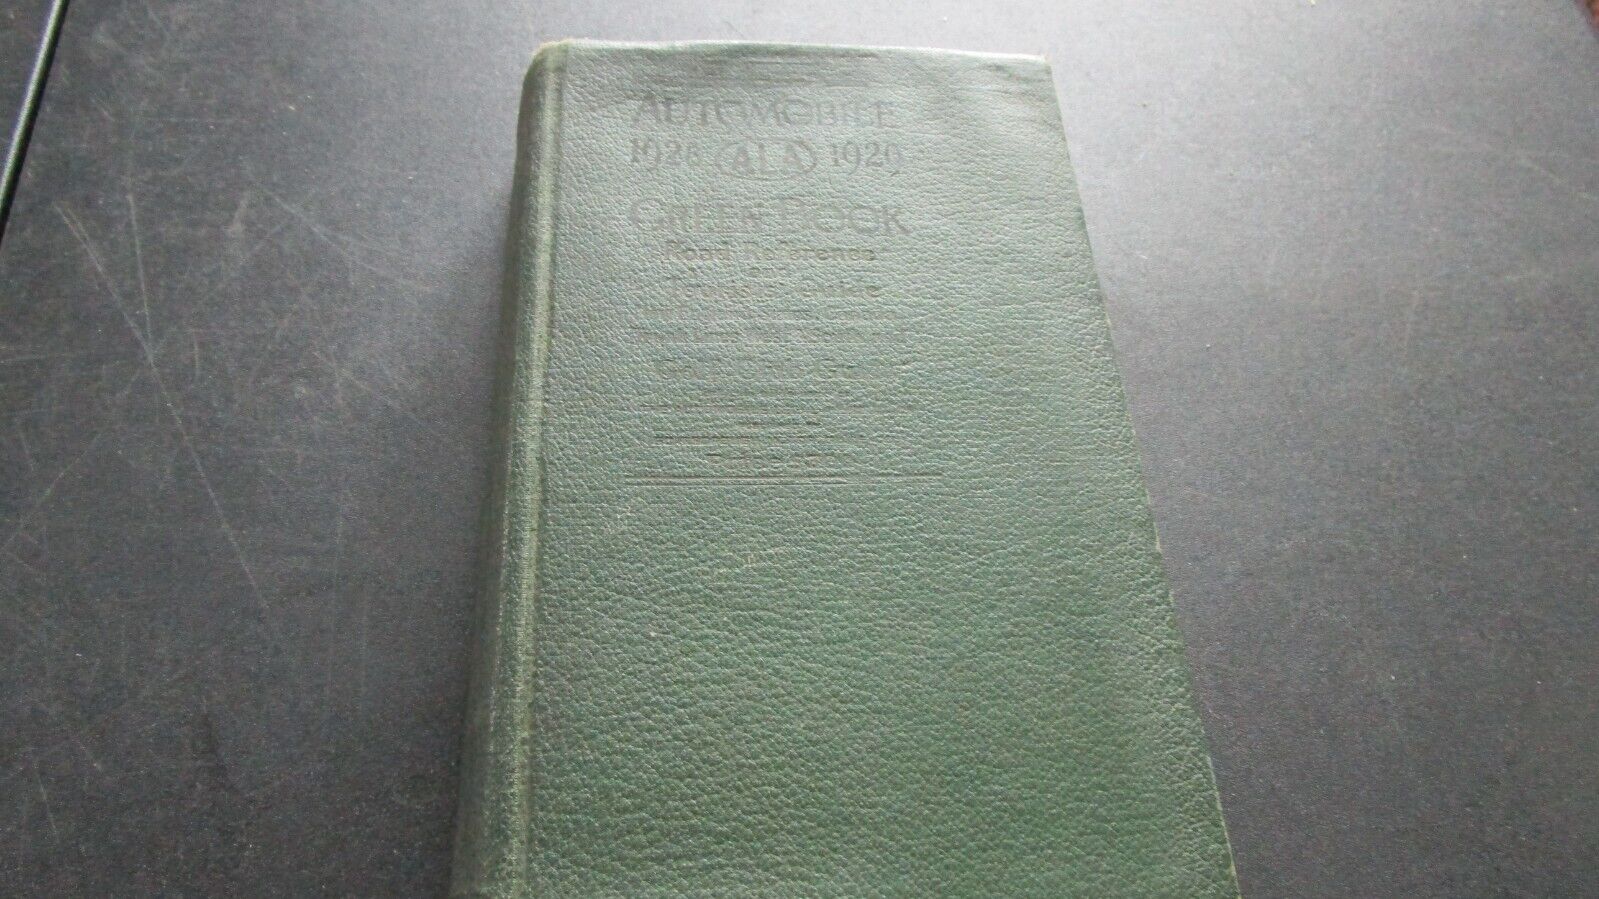 AUTOMOBILE GREEN BOOK 1928-1929 VOL 1